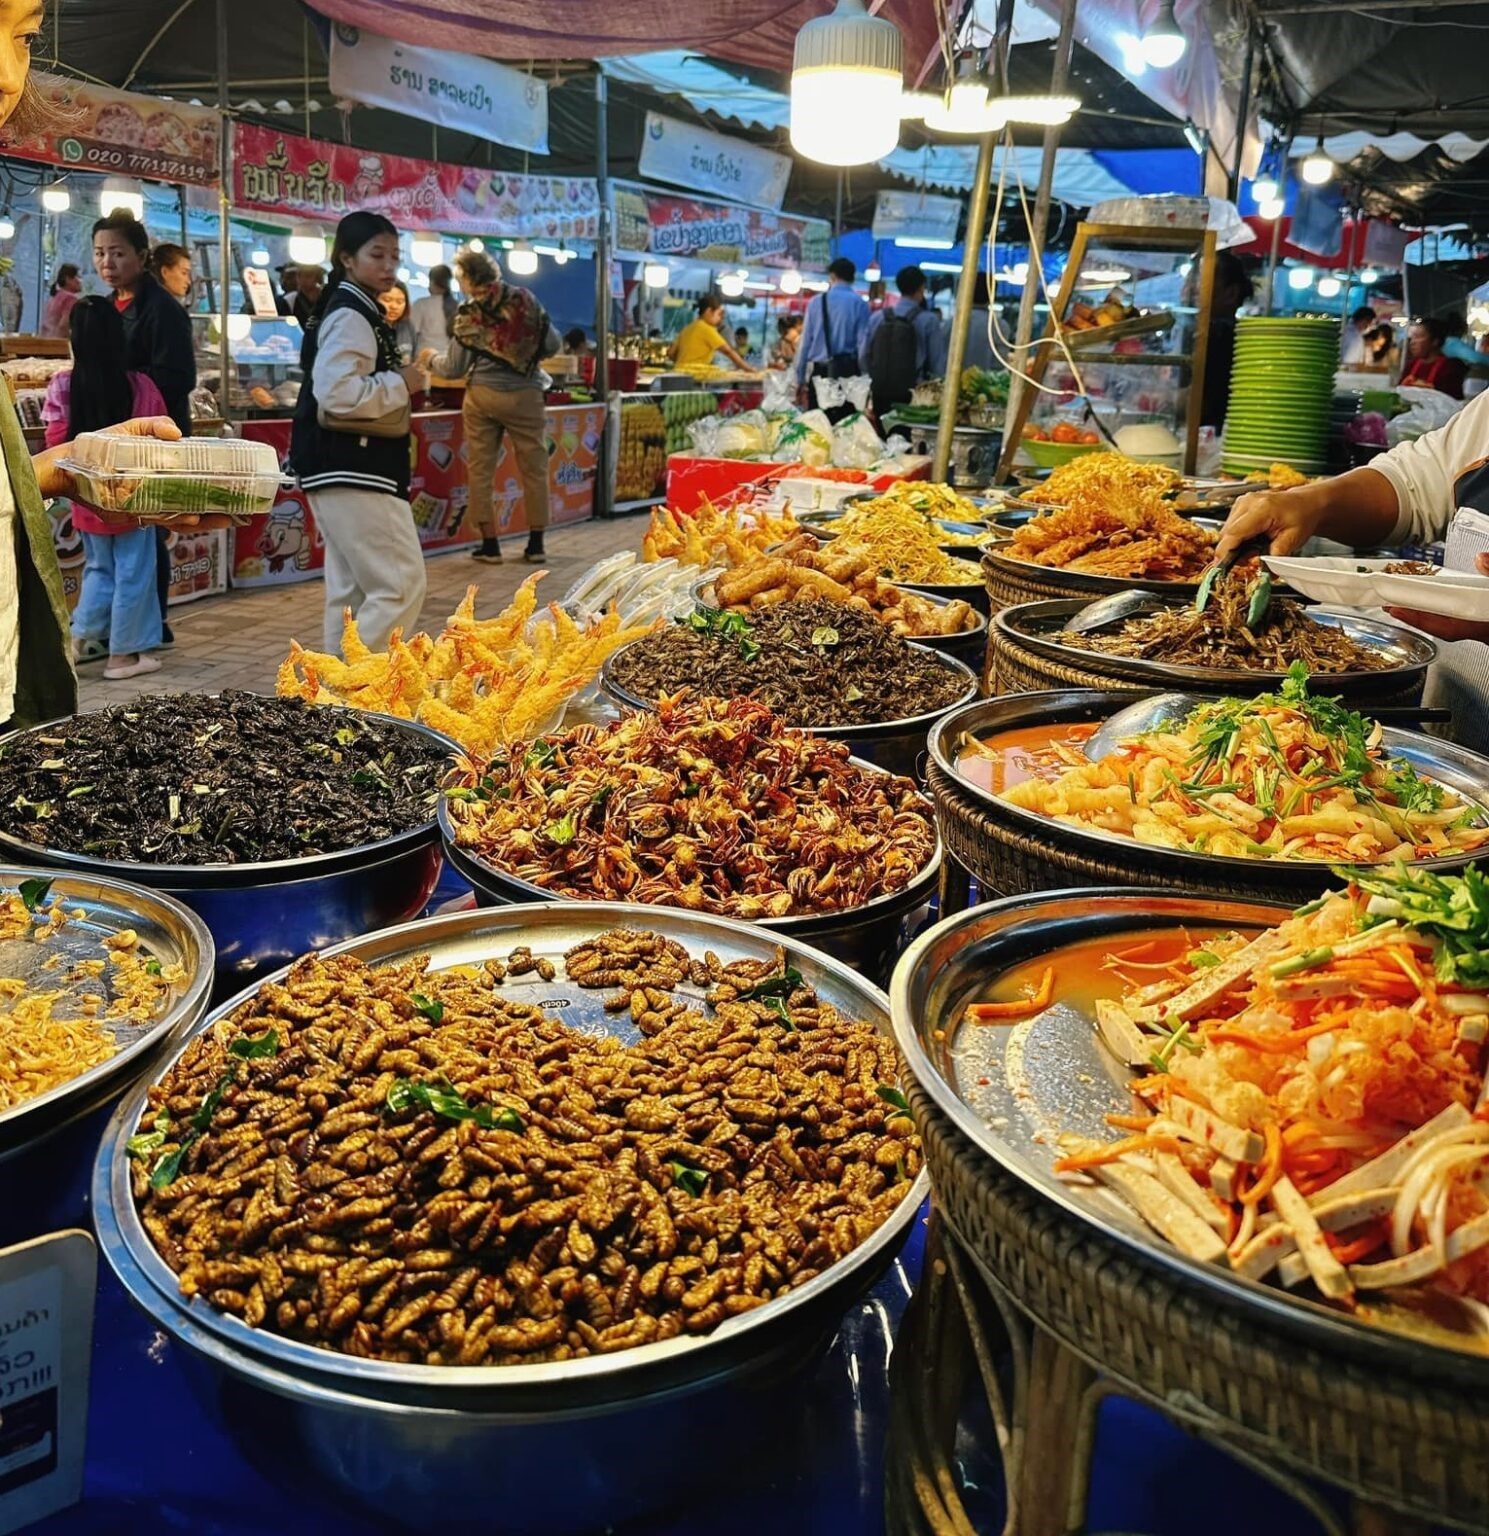 Hội chợ ẩm thực Lào đang diễn ra tại thủ đô Vientiane được kỳ vọng sẽ ghi nhận 6 tỷ kip giao dịch, từ ngày 23-27/1. Sự kiện mở từ 9h sáng đến 22h giờ tối tại Công viên Chao Anouvong ở bờ sông Mekong.